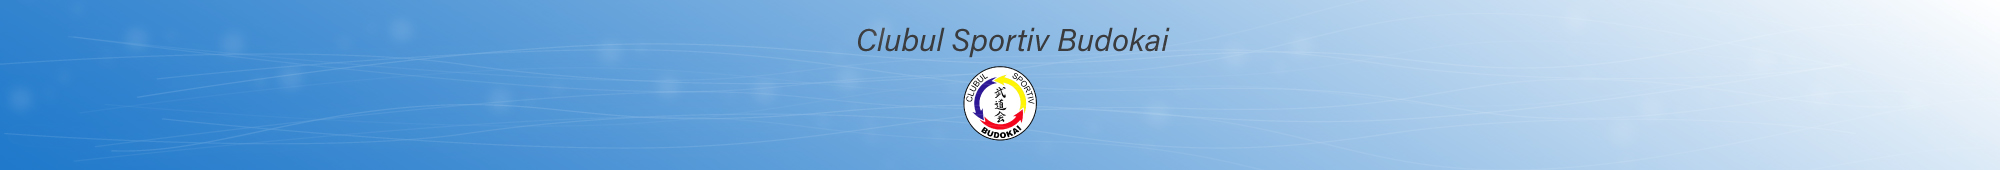 Clubul Sportiv Budokai